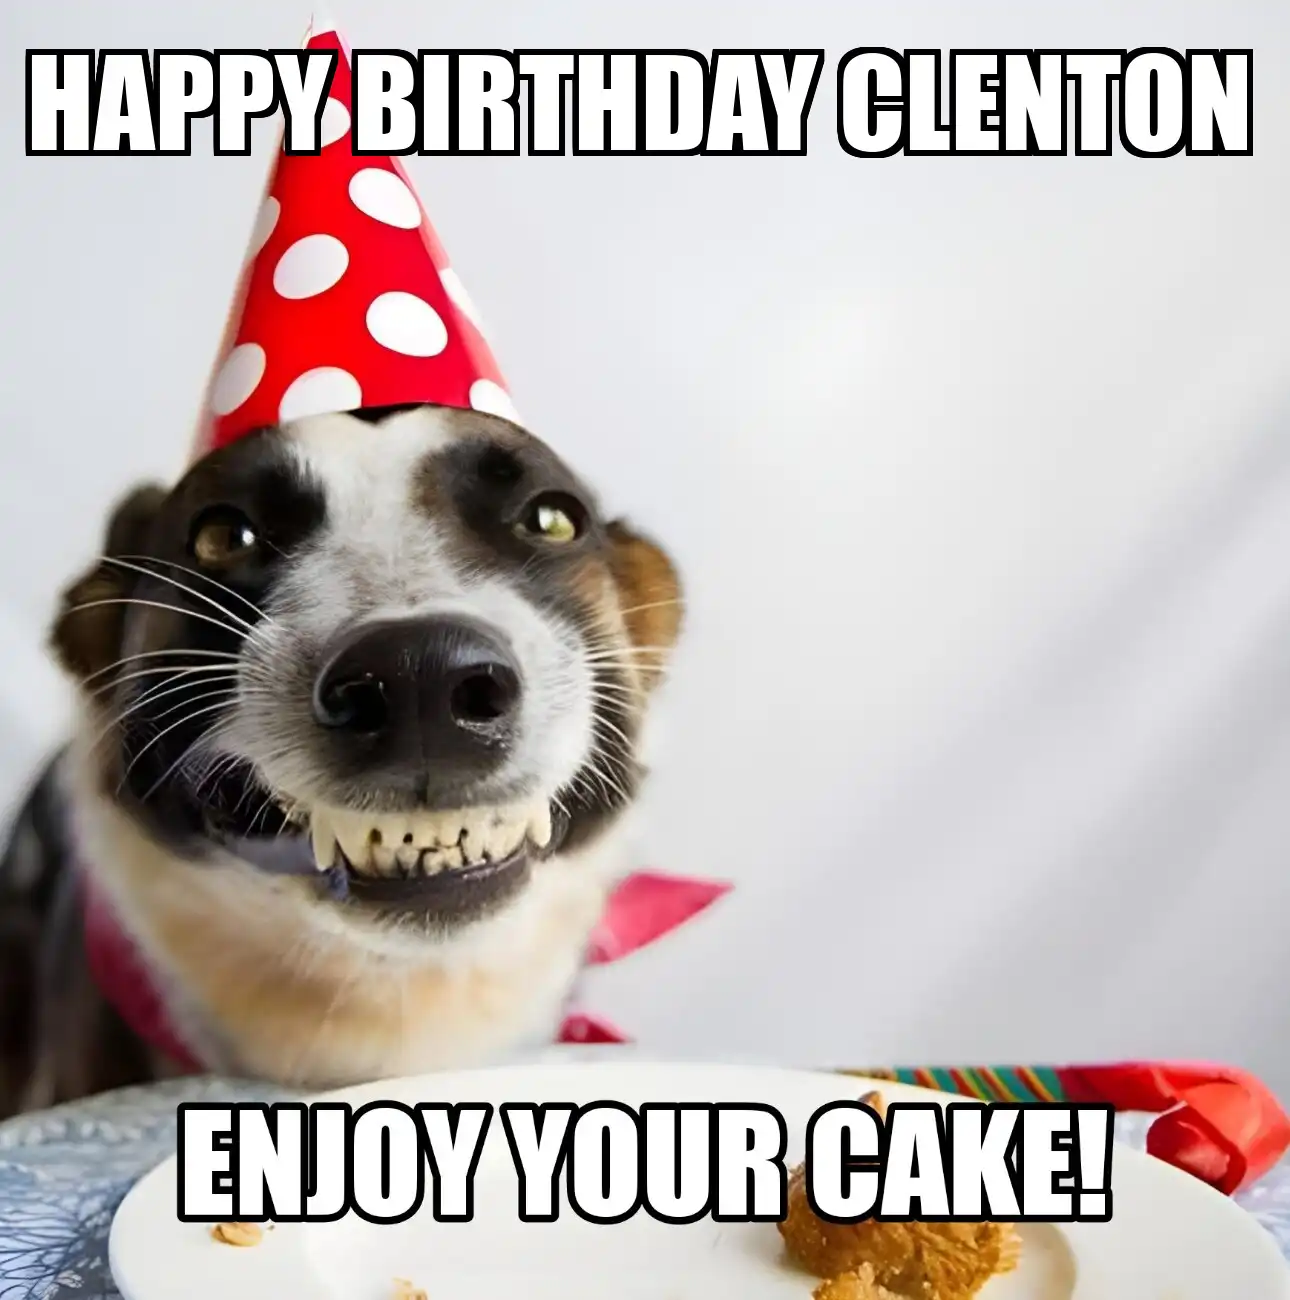 Happy Birthday Clenton Enjoy Your Cake Dog Meme